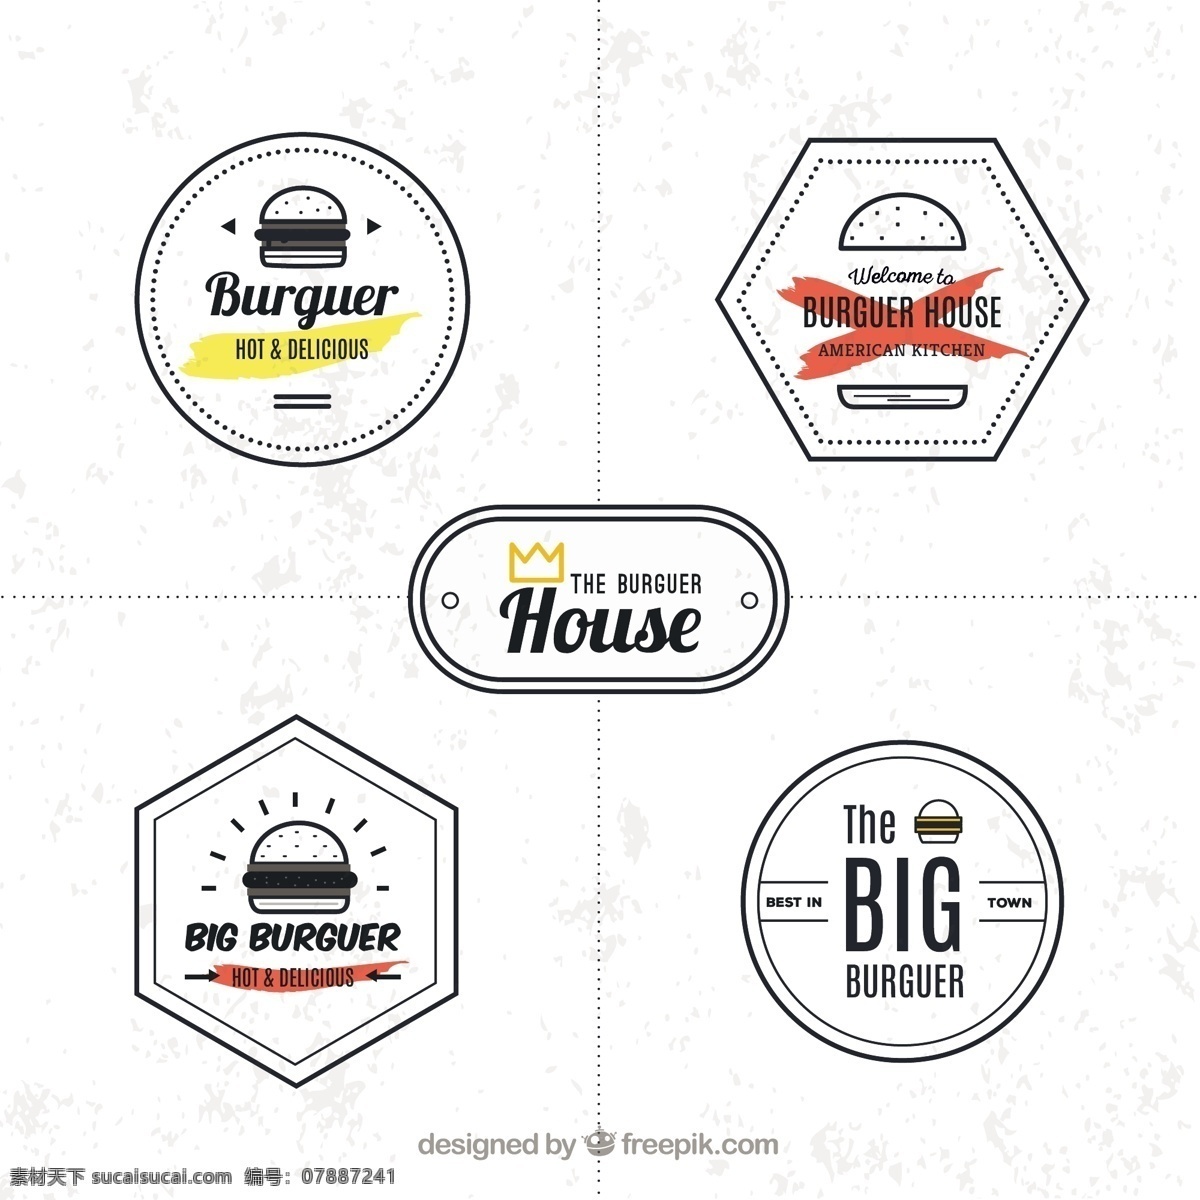 简约 标志 汉堡 标识 食品 商务 菜单 餐厅 线 标签 餐厅菜单 公寓 公司 酒吧 食品标识 快餐 企业形象 品牌 餐厅标志